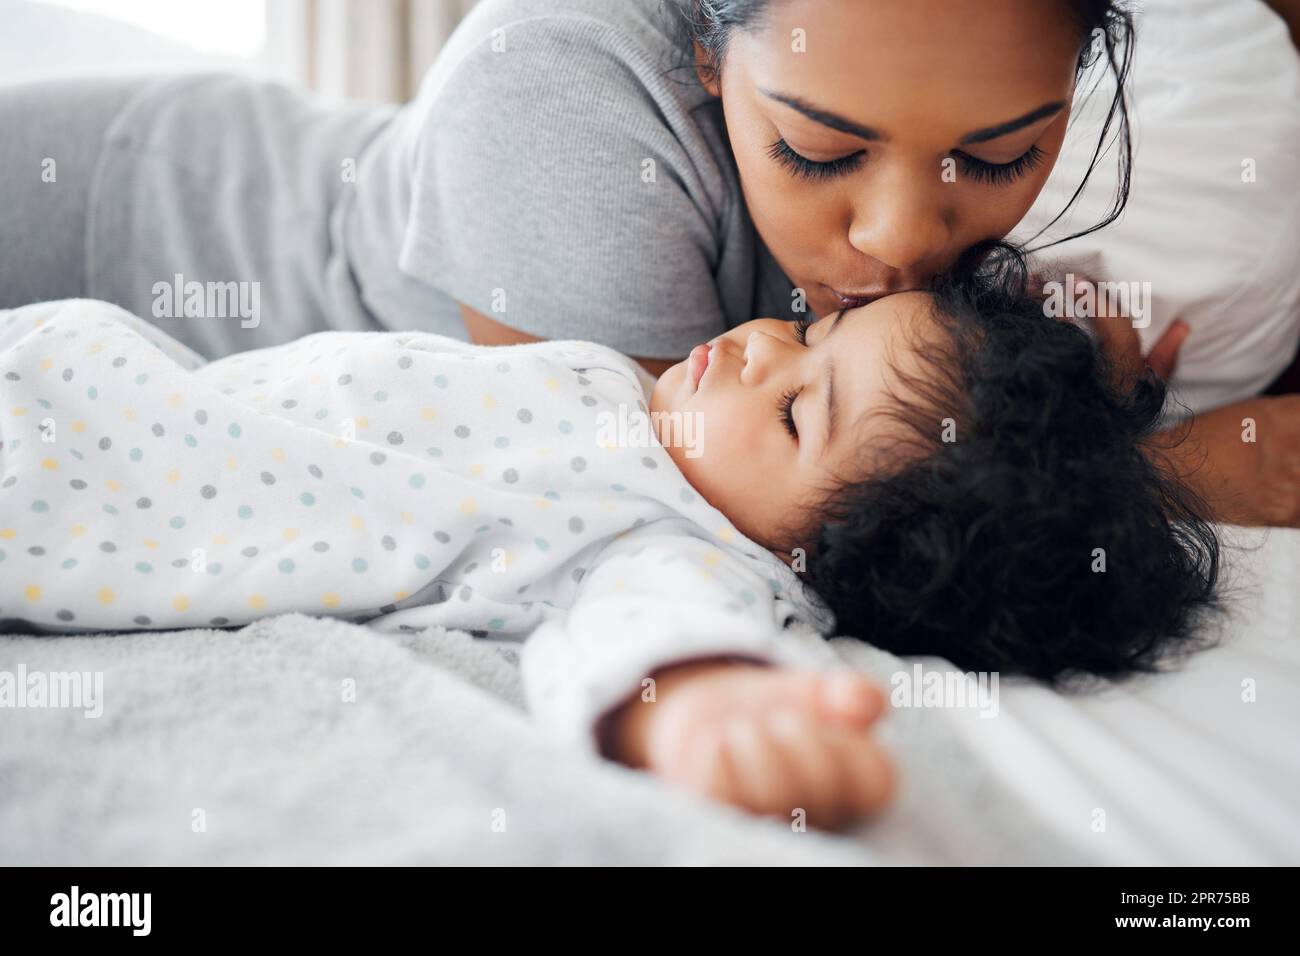 Quel amour. Photo d'une jeune mère embrassant son bébé endormi. Banque D'Images